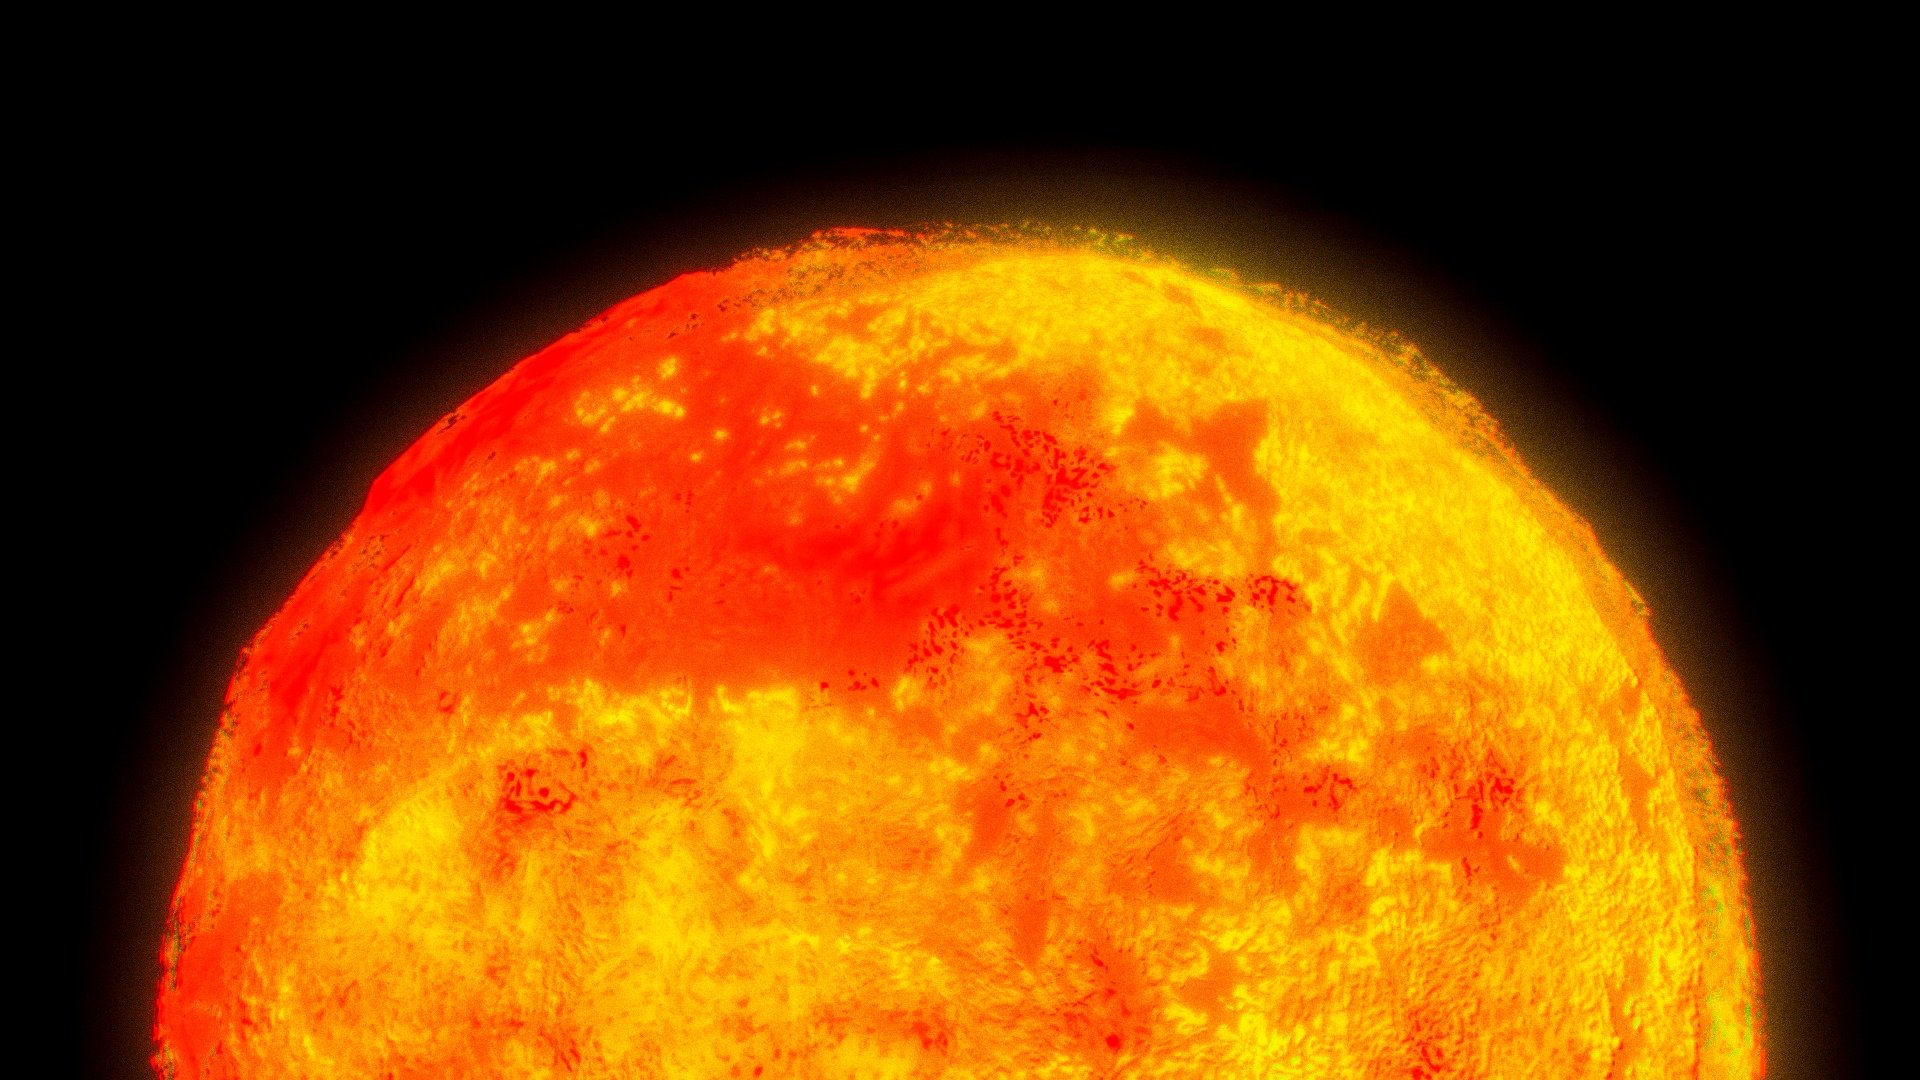 СОЛНЦЕ ◉ Светило солнечной системы

SUN ◉ Solar system star - СОЛНЦЕ ◉ SUN - 3D model by Graphic[MOD] (@graphic.mod) 3d model